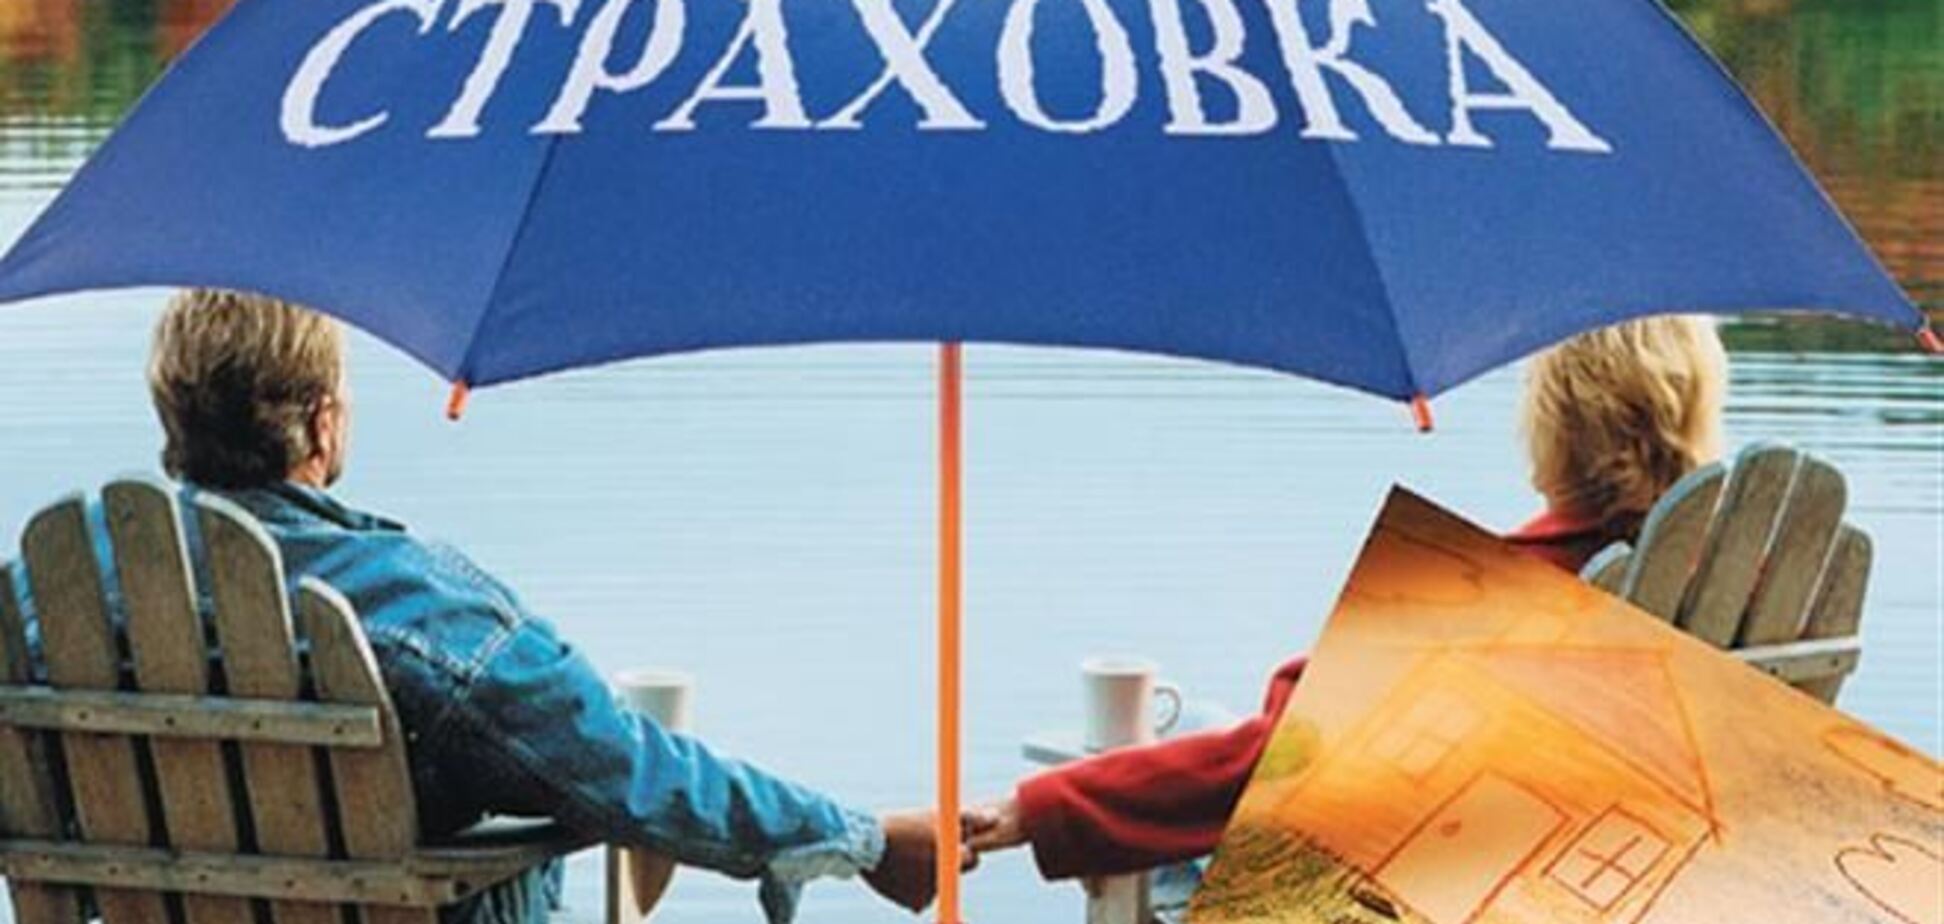 Украинские туристы получат страховки по стандартам ЕС